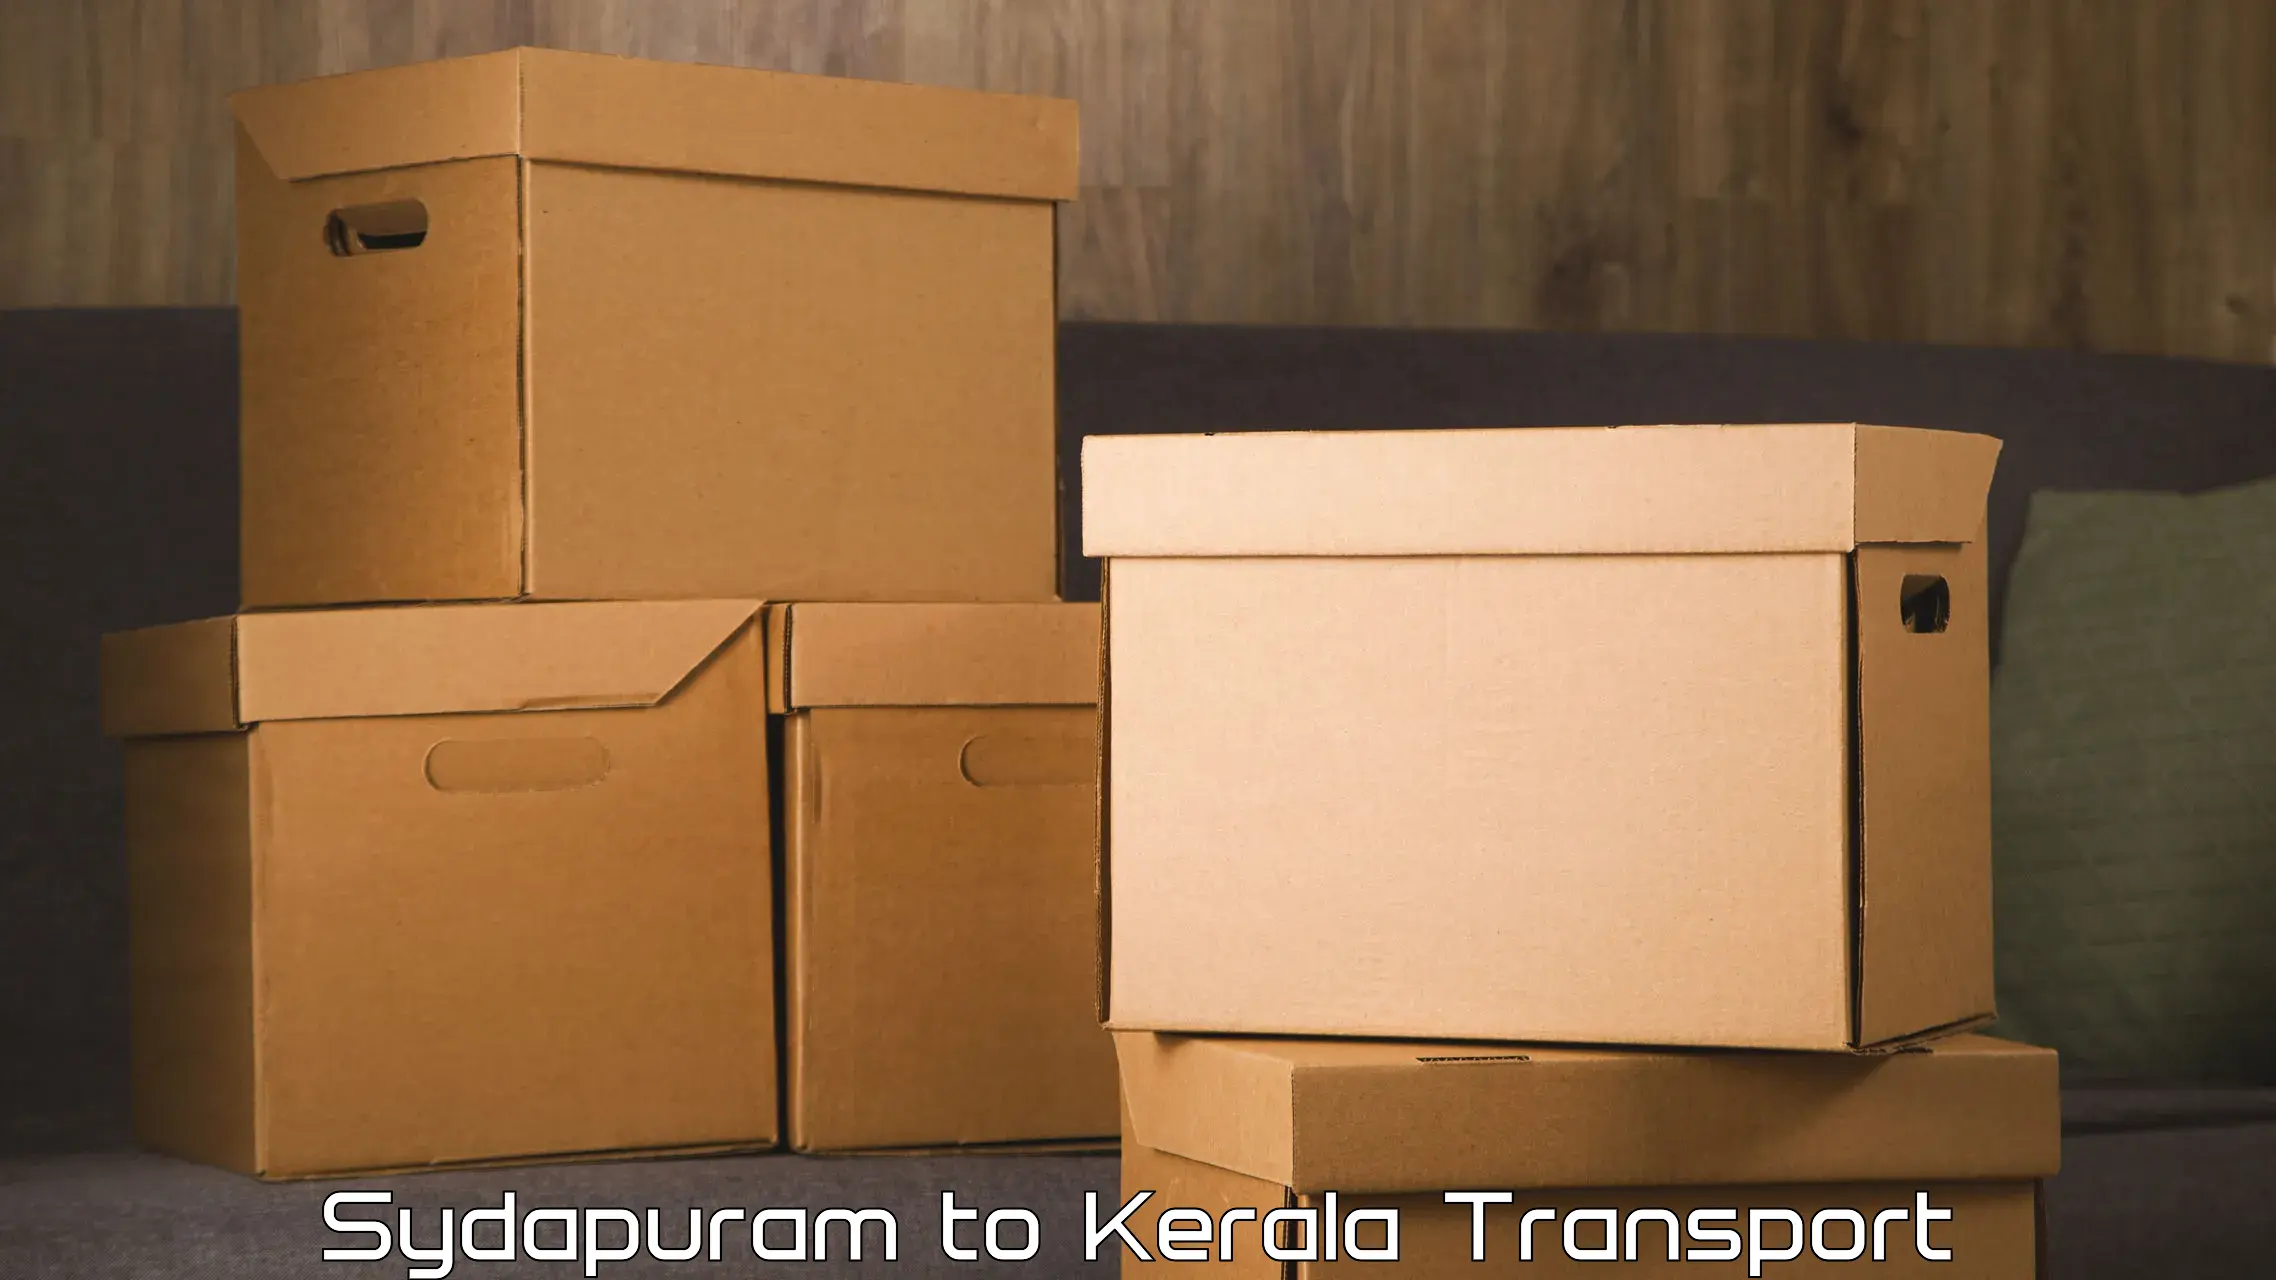 Transport in sharing Sydapuram to Thrissur